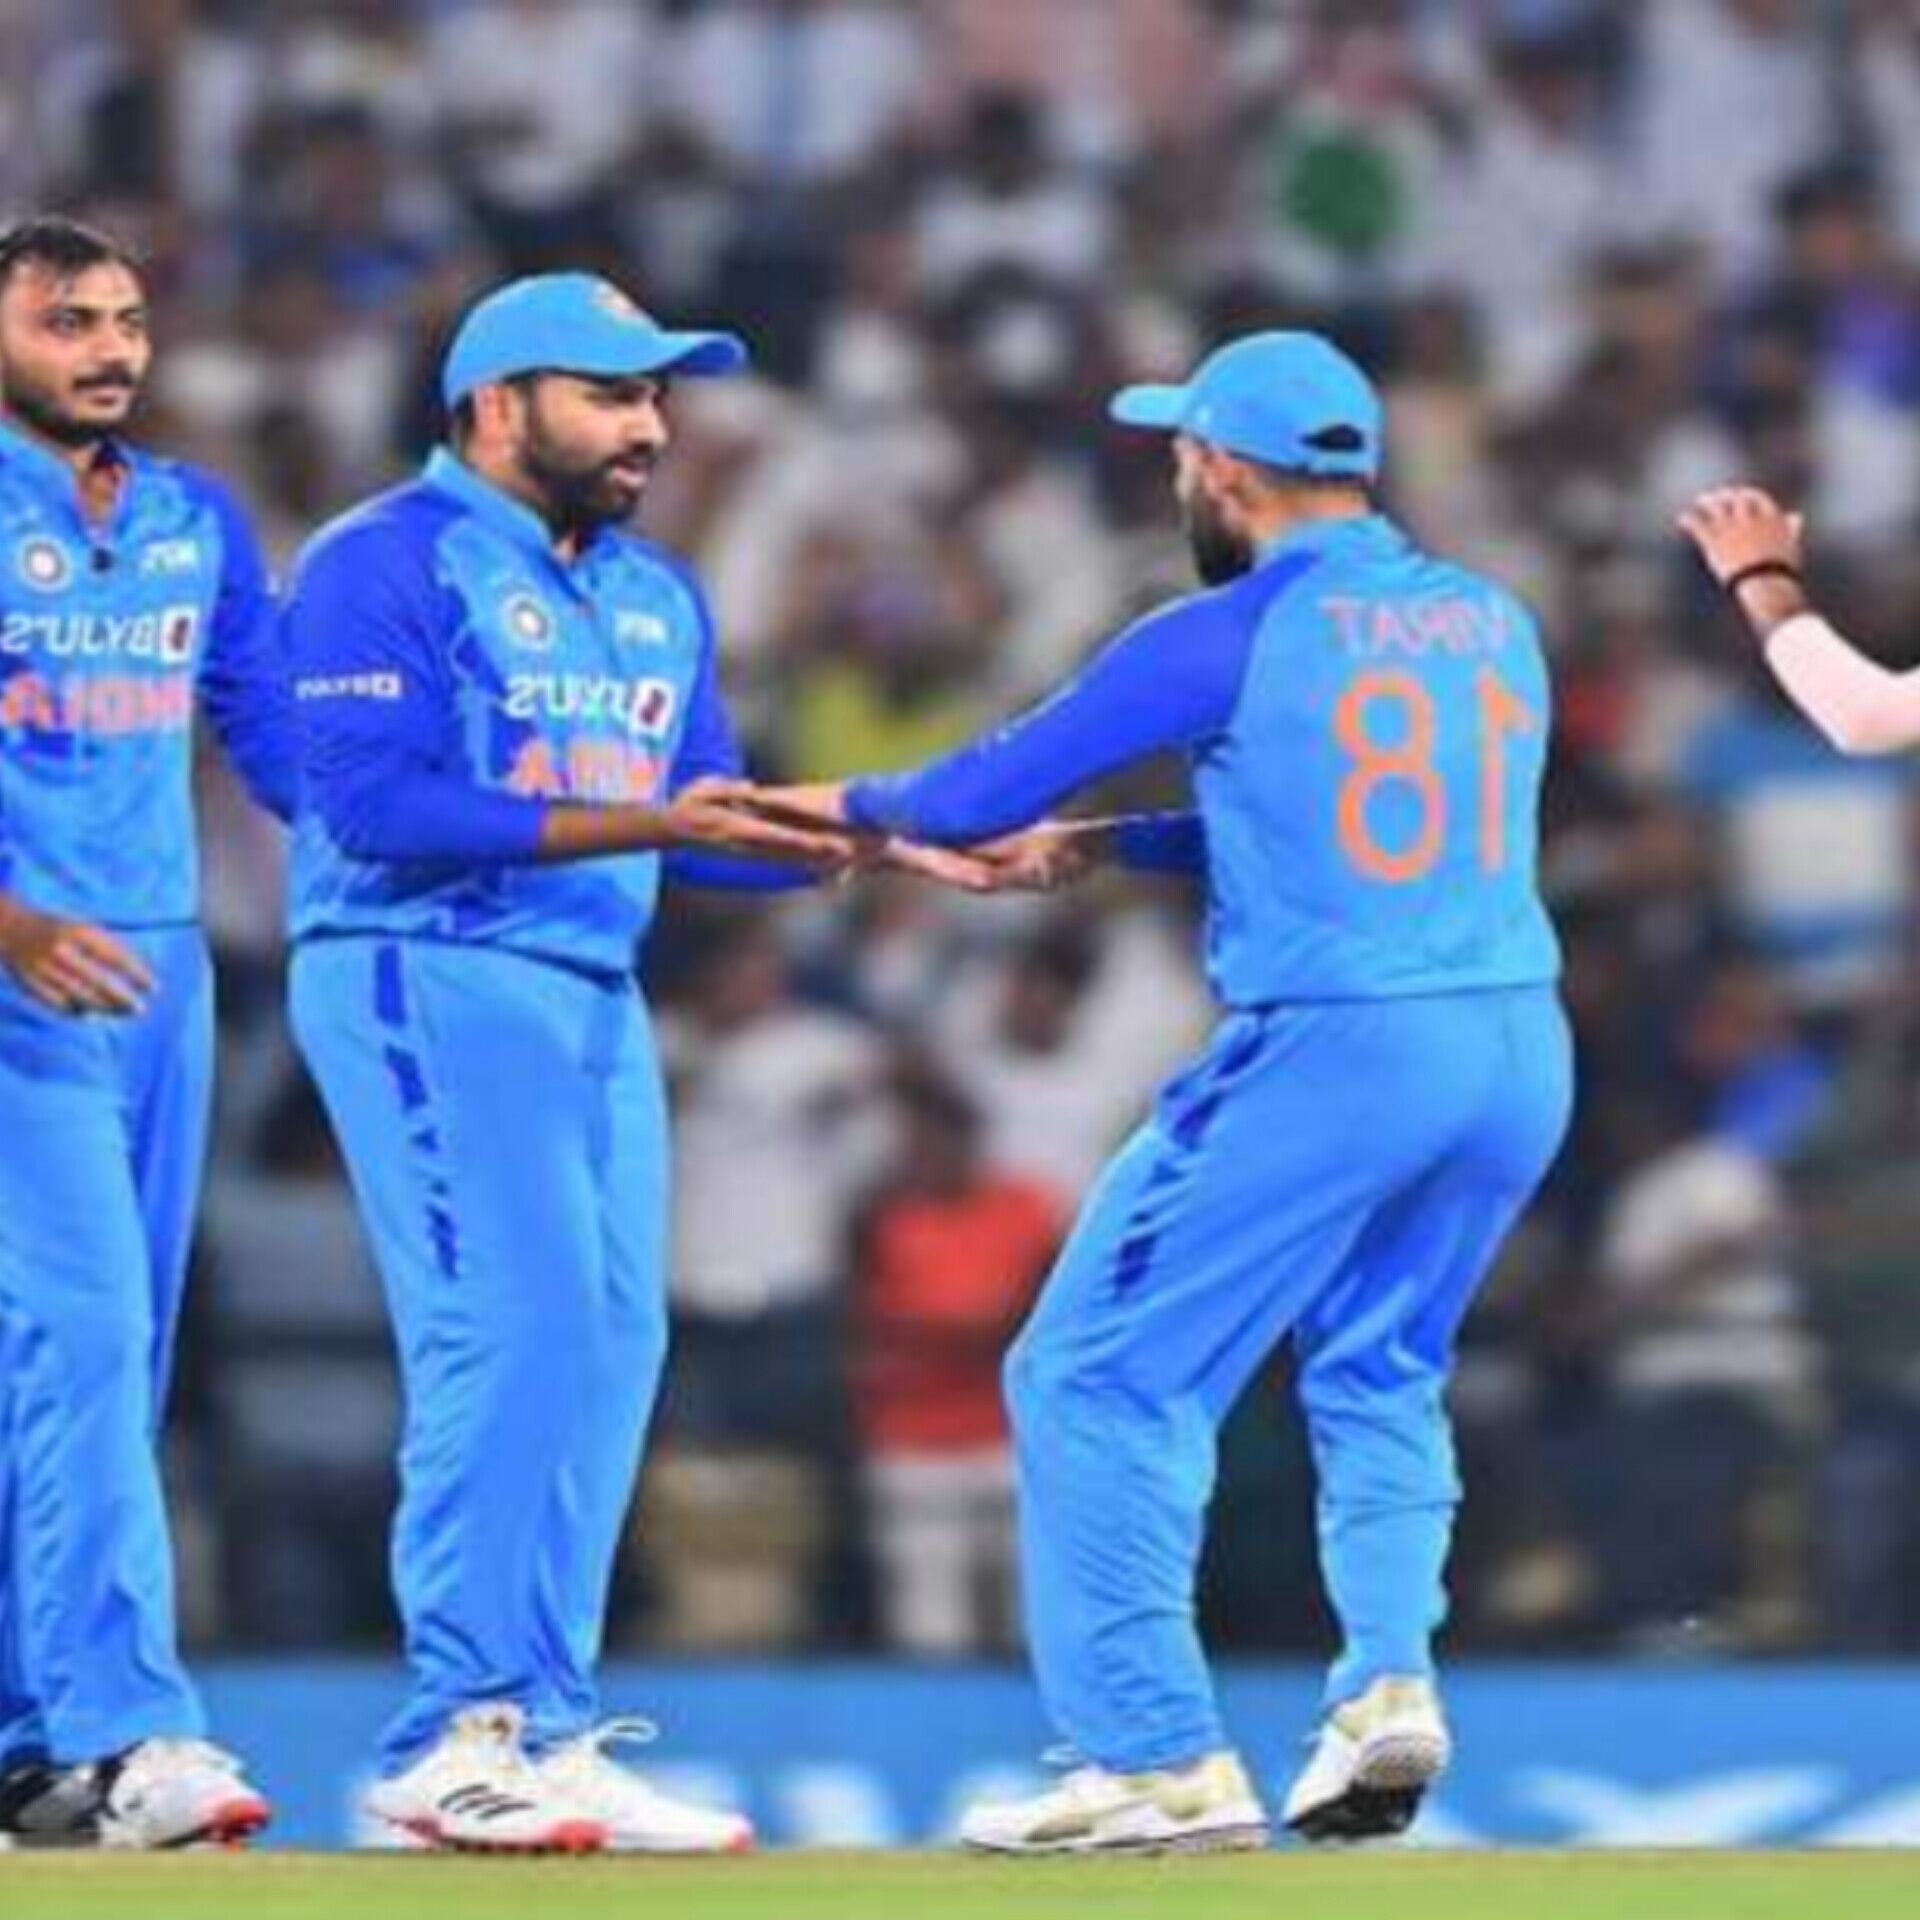 रोहित शर्मा की कप्तानी में भारत ने रांची टेस्ट जीता, सीरीज़ में 3-1 से बढ़त हासिल की